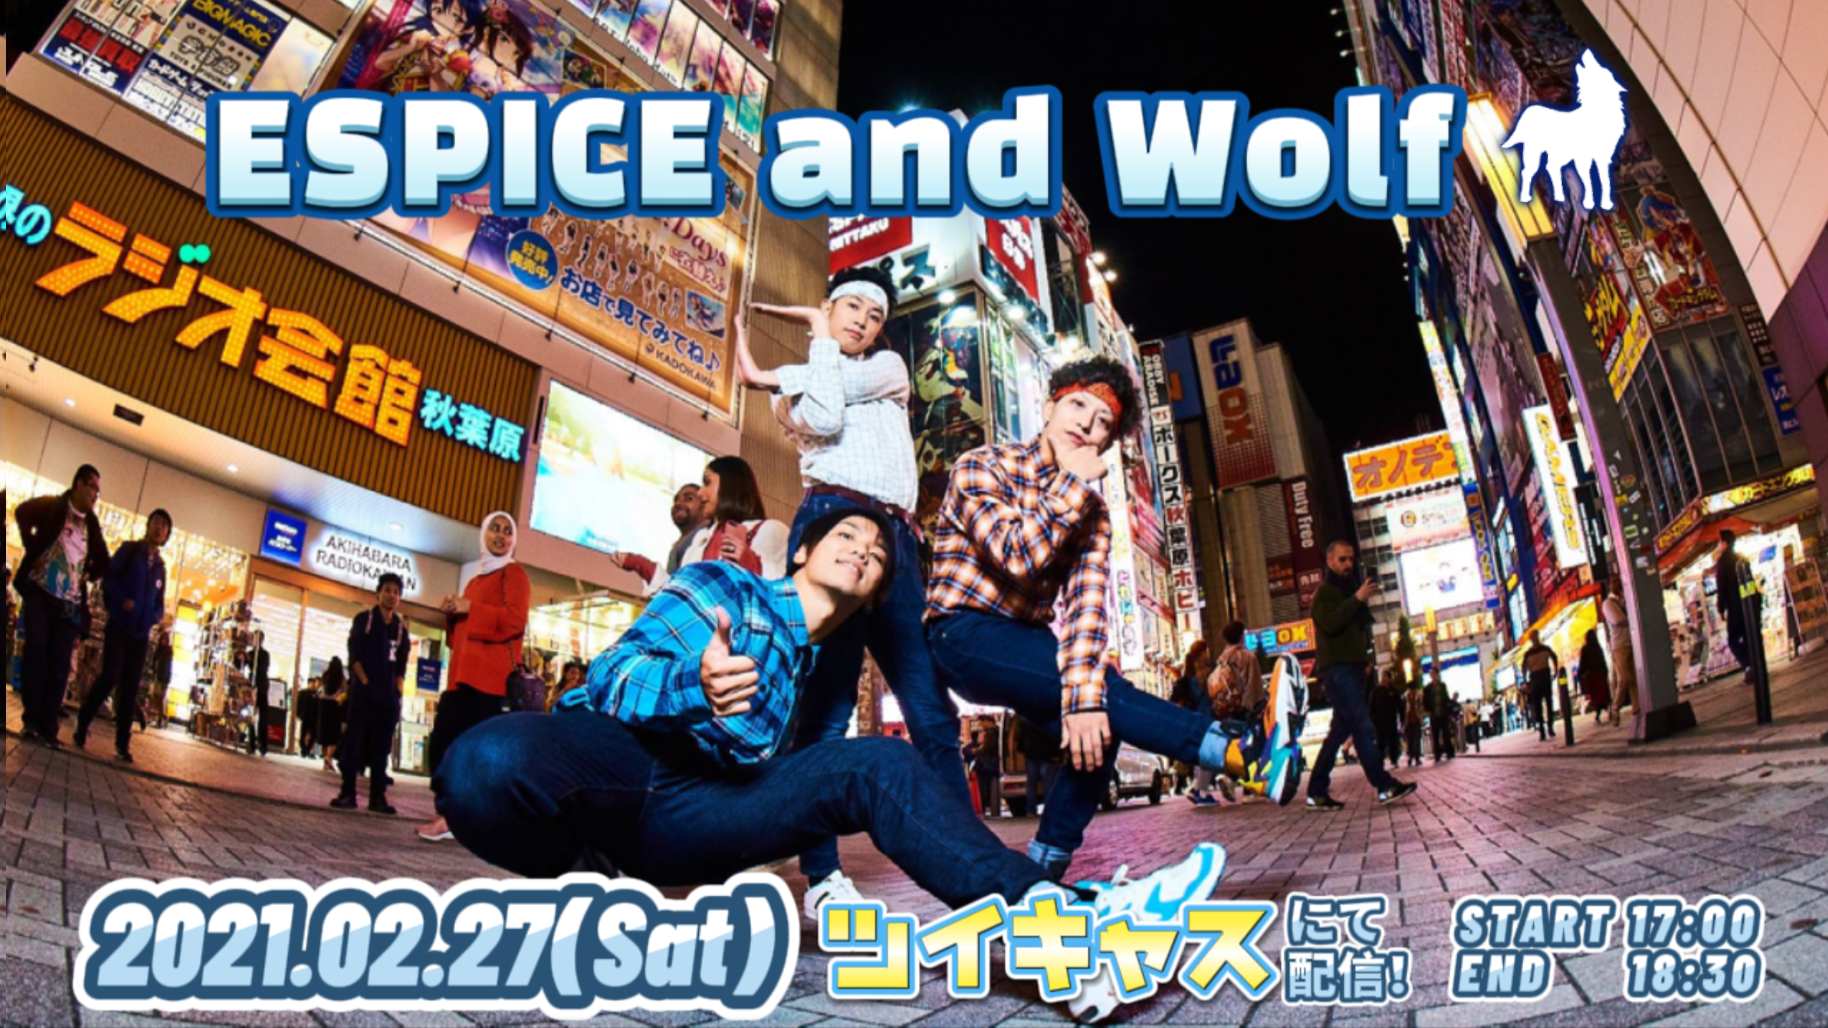 2月27日 RAB ESPICE 2021 1st単独イベント「ESPICE and Wolf 